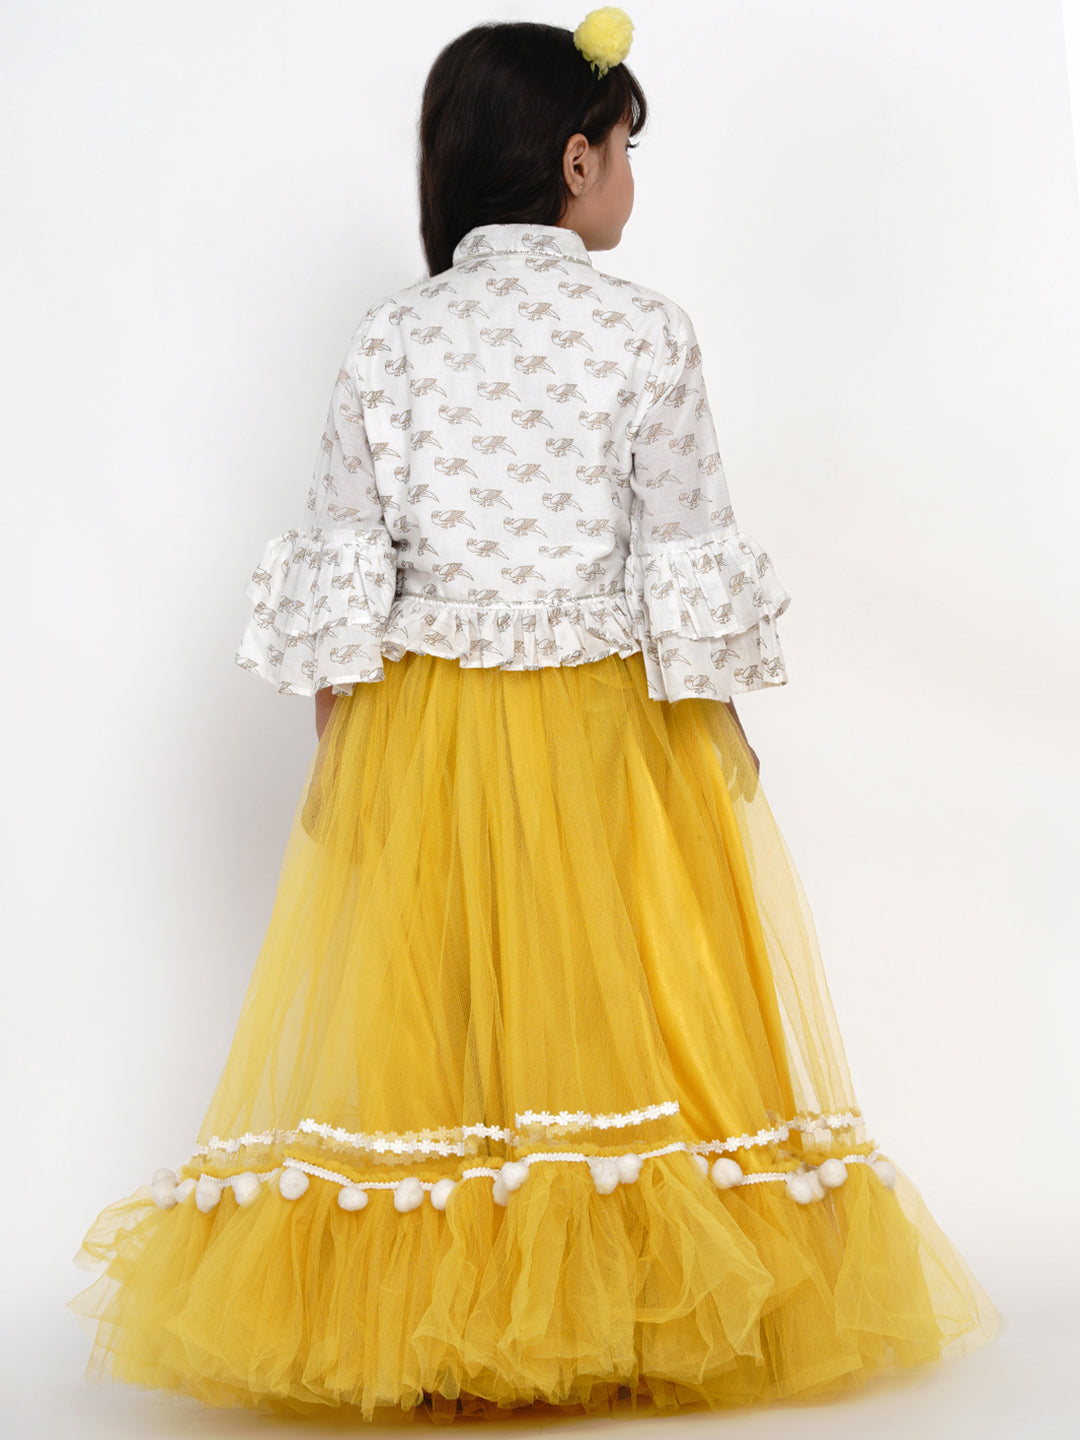 Bitiya By Bhama Girls Off White & Yellow Block Printed Cotton Shirt With Skirt